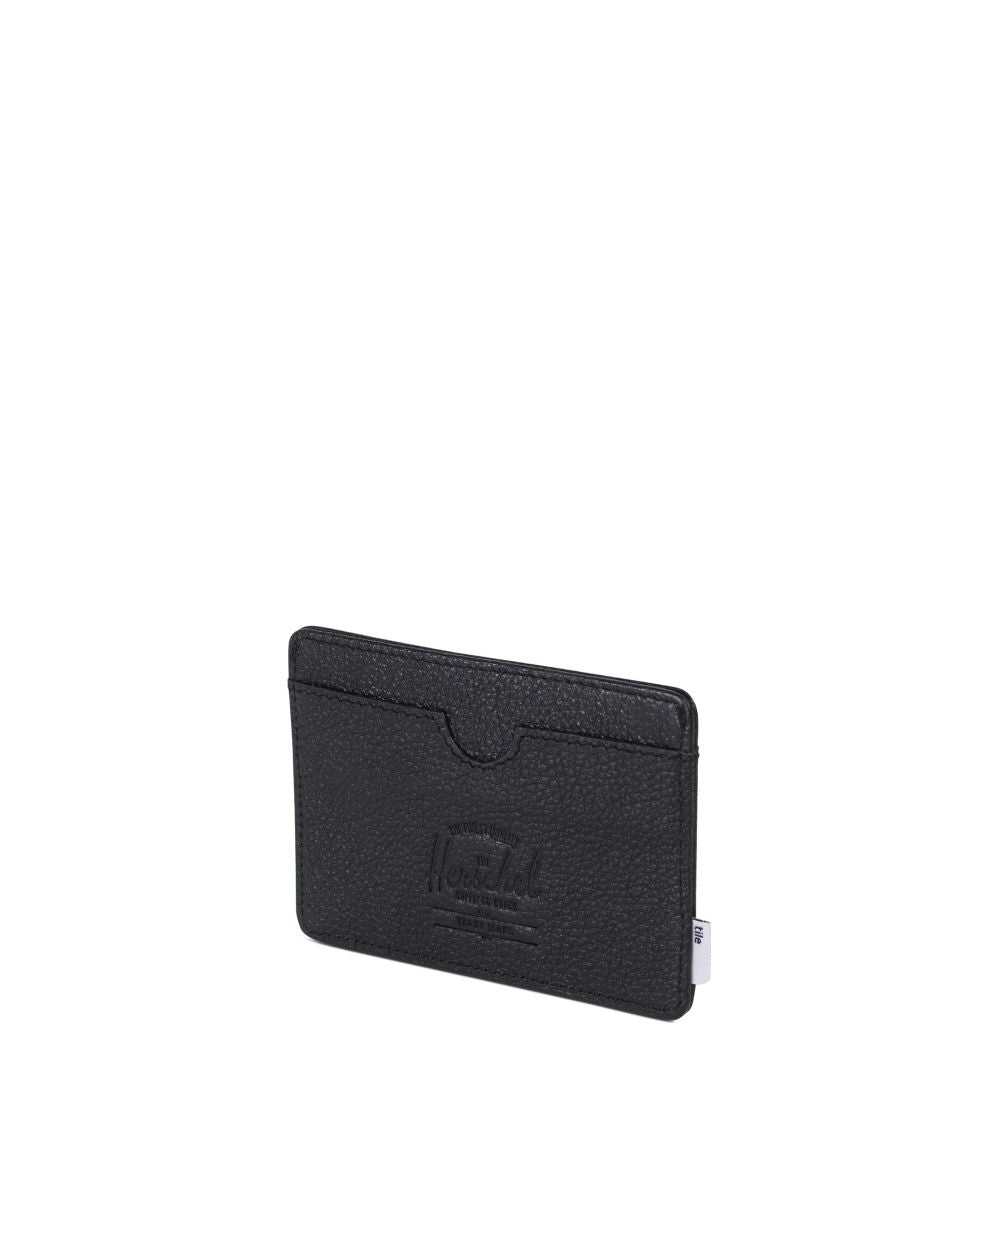 Herschel Supply Co - Charlie Wallet + Tile Slim, Black Leather